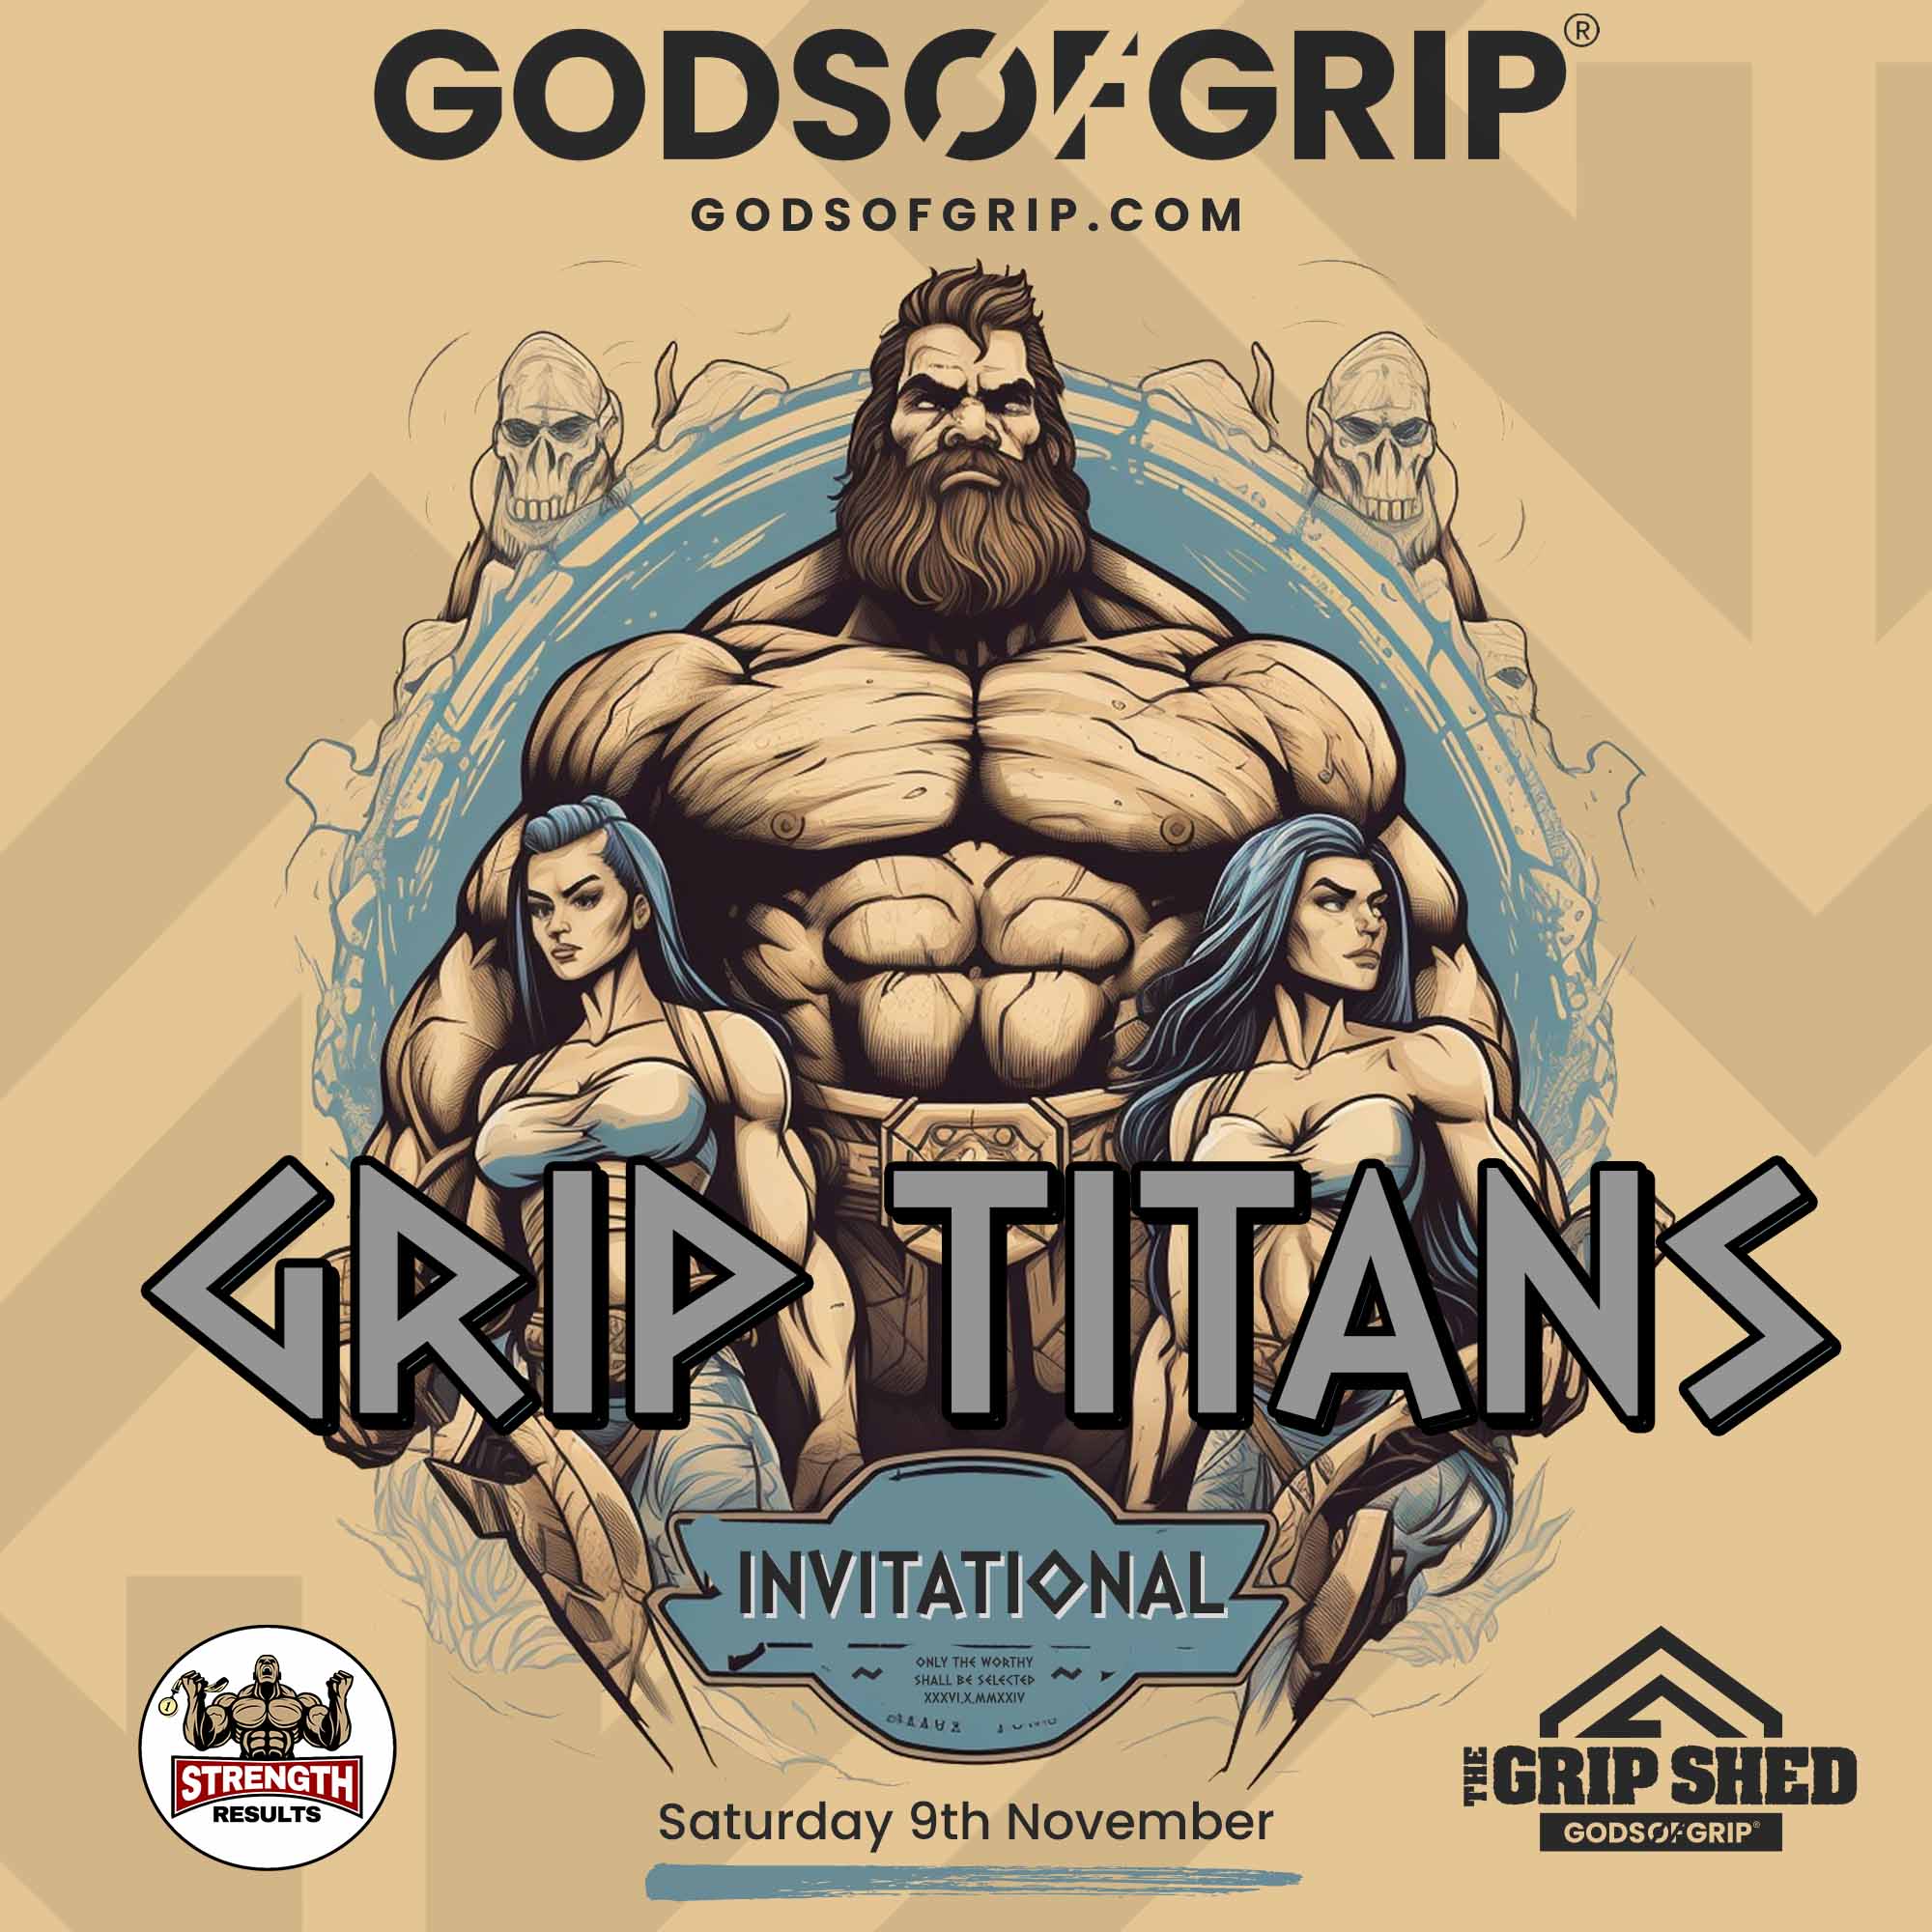 Grip Titans Event